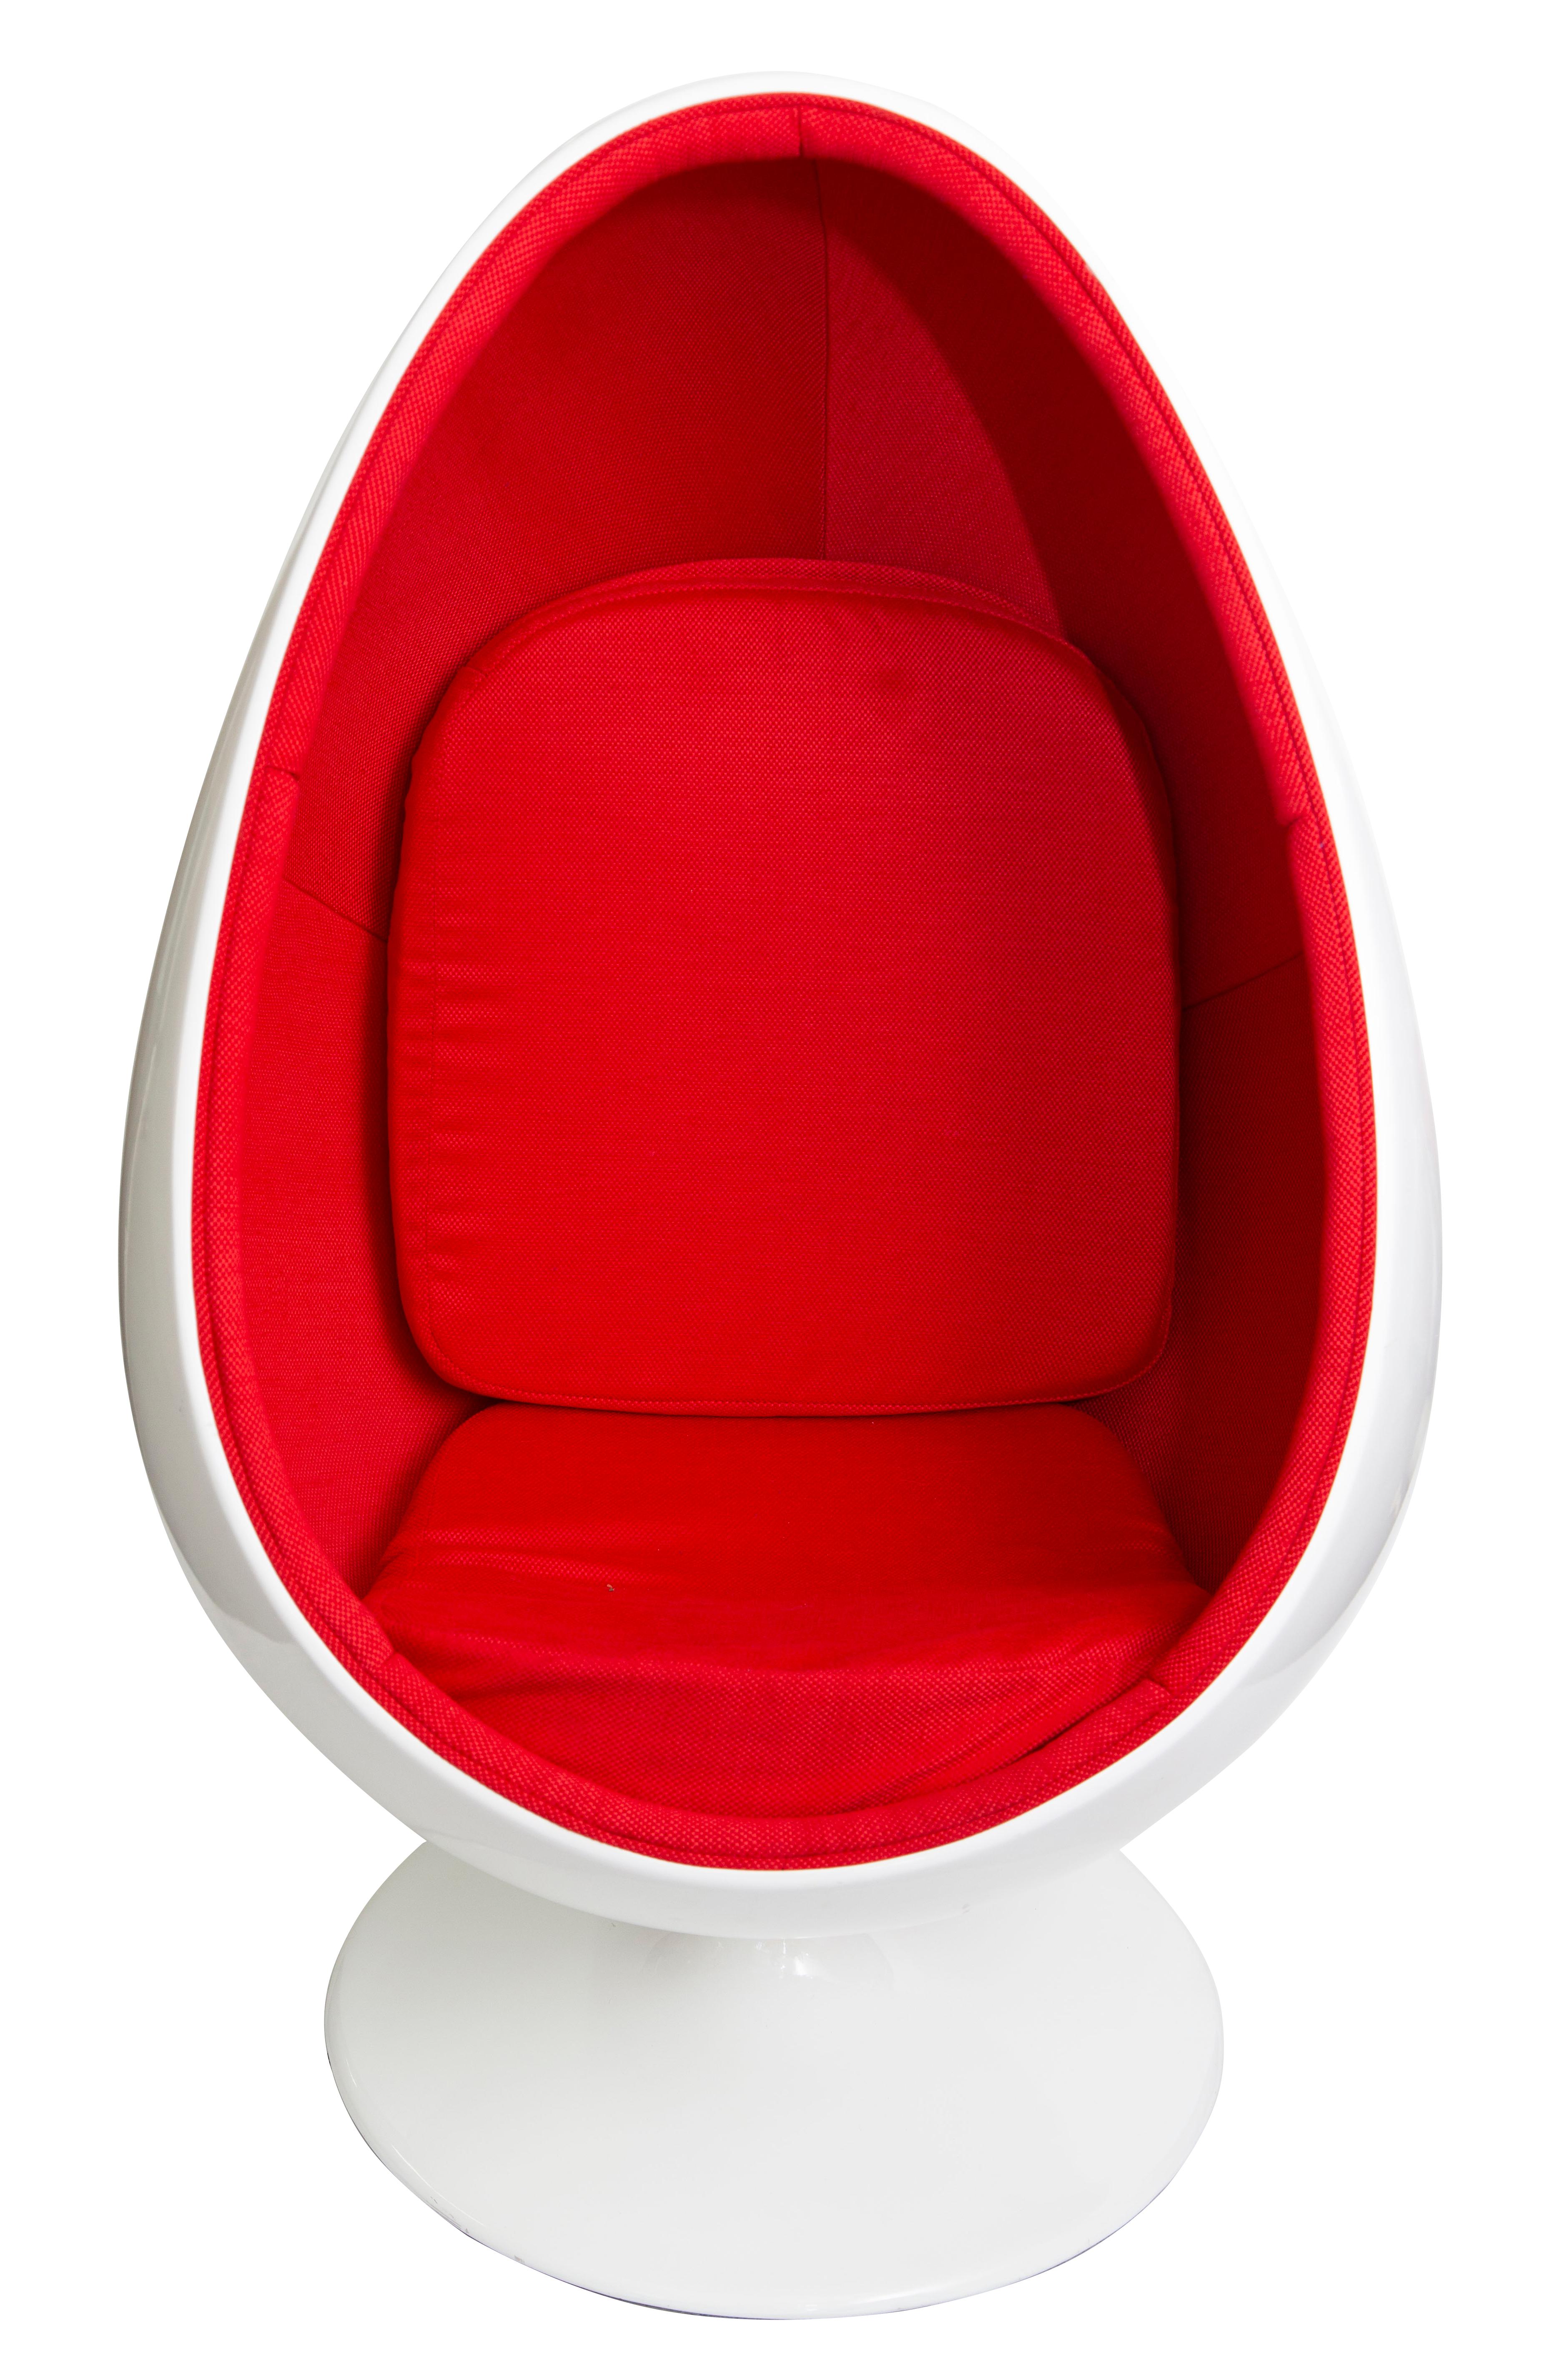 Der ikonische Egg Chair von Henrik Thor Larsen. Hergestellt Mitte der 1960er Jahre in Schweden.